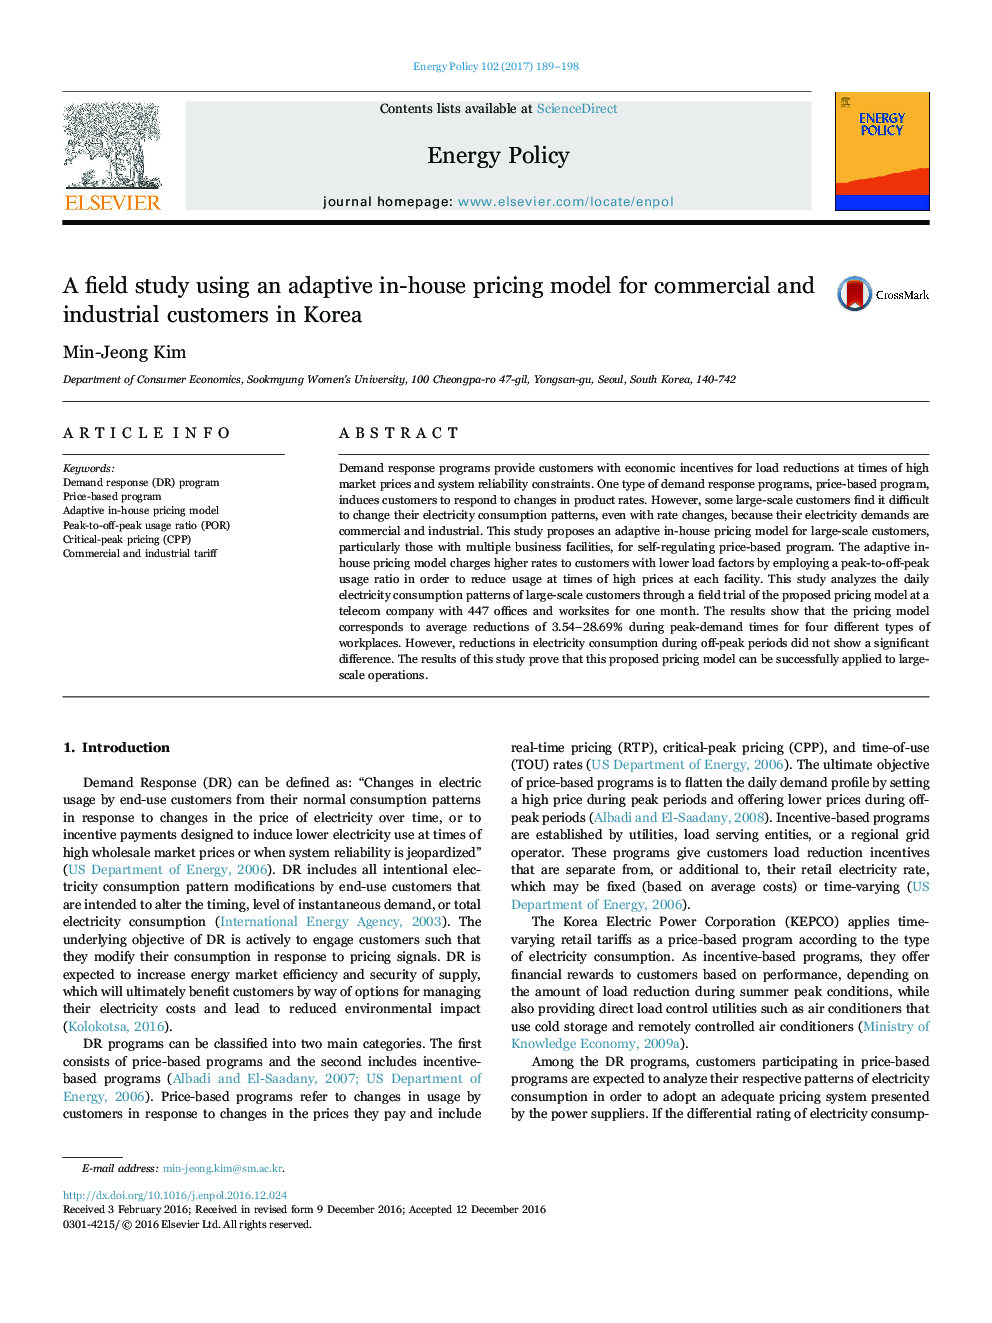 مطالعهی میدانی با استفاده از مدل سازگاری قیمتگذاری در خانه برای مشتریان تجاری و صنعتی در کره 